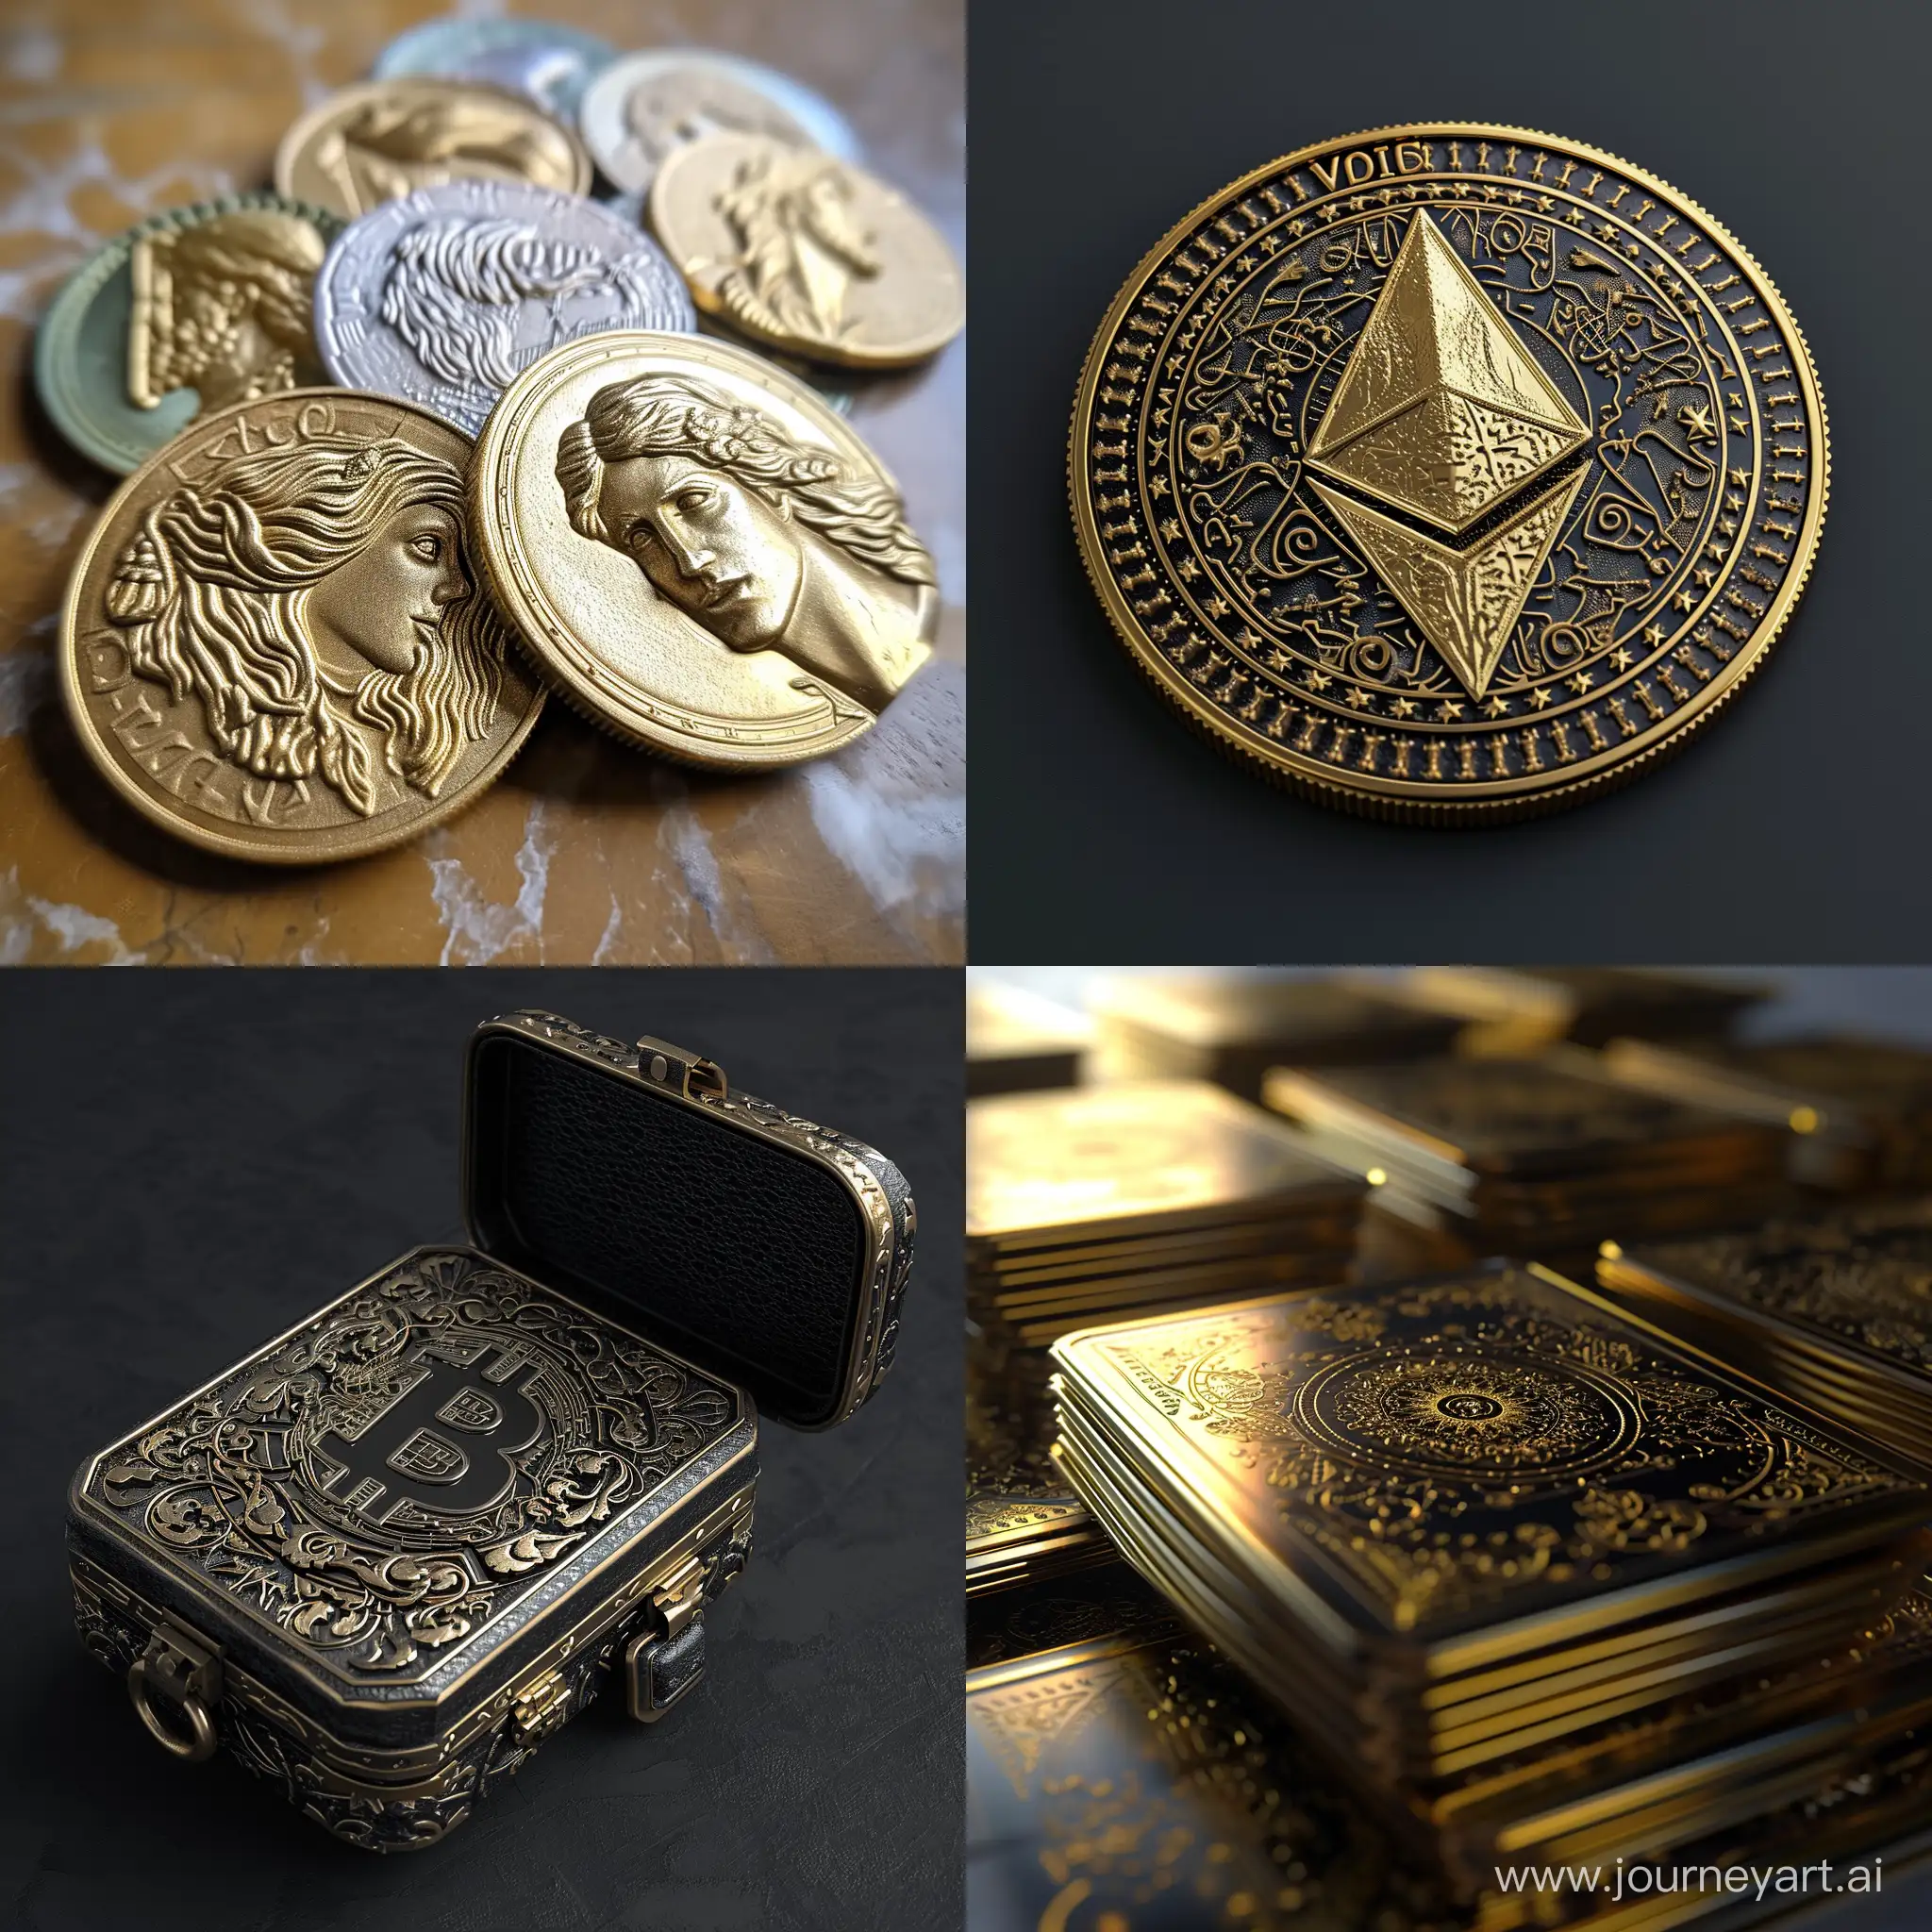 Unique NFT 3D crypto art cards & coins.